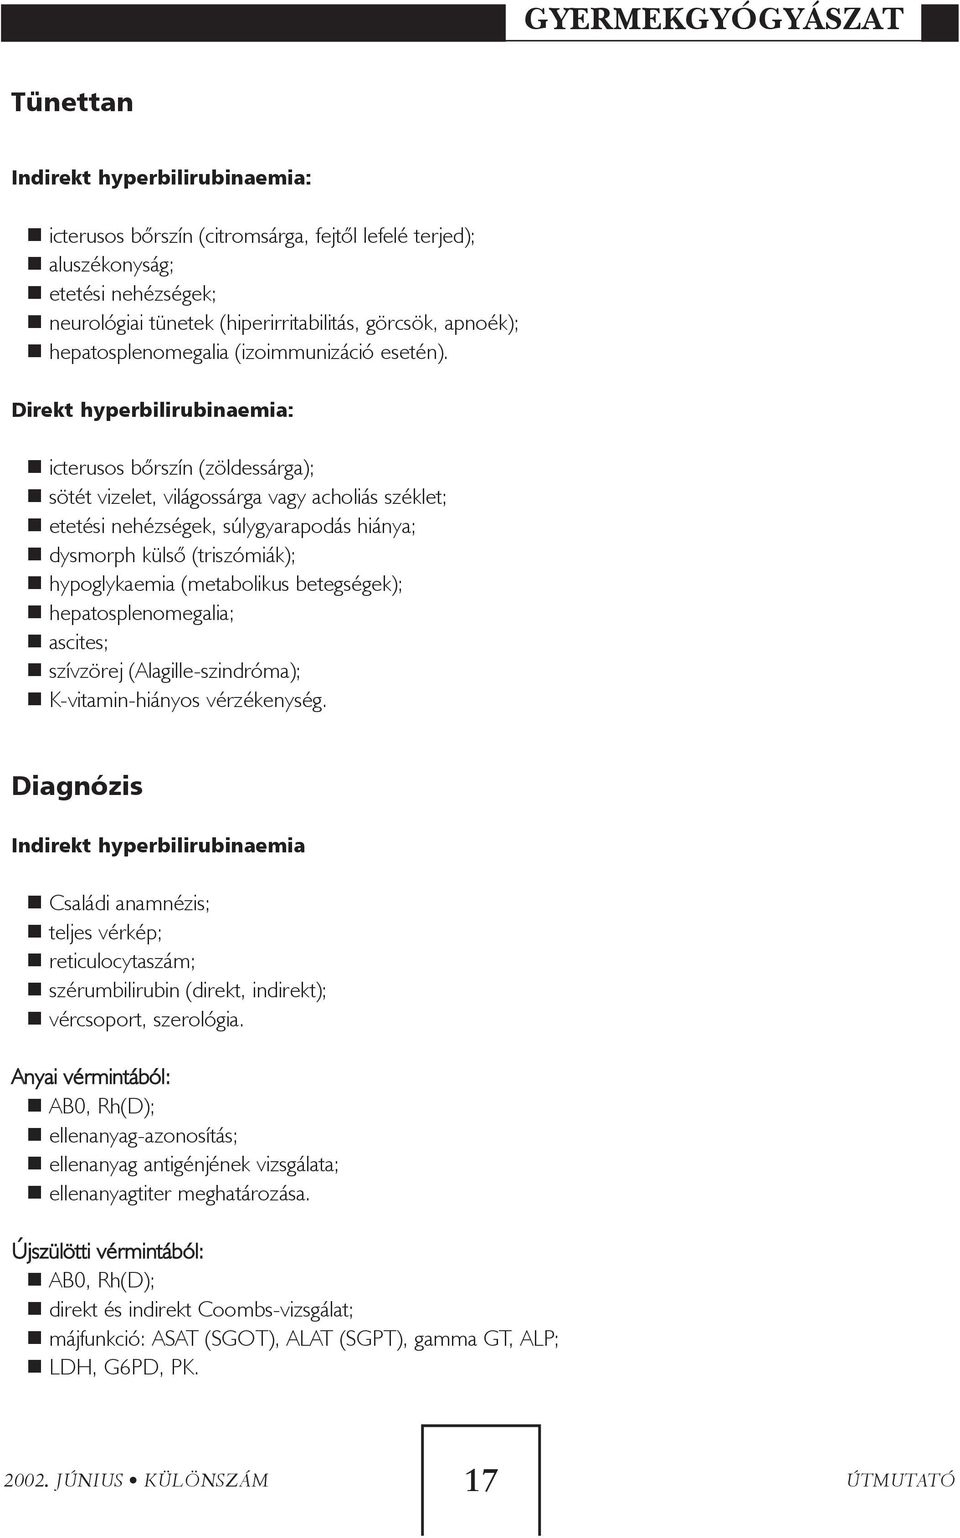 Direkt hyperbilirubinaemia: icterusos bõrszín (zöldessárga); sötét vizelet, világossárga vagy acholiás széklet; etetési nehézségek, súlygyarapodás hiánya; dysmorph külsõ (triszómiák); hypoglykaemia